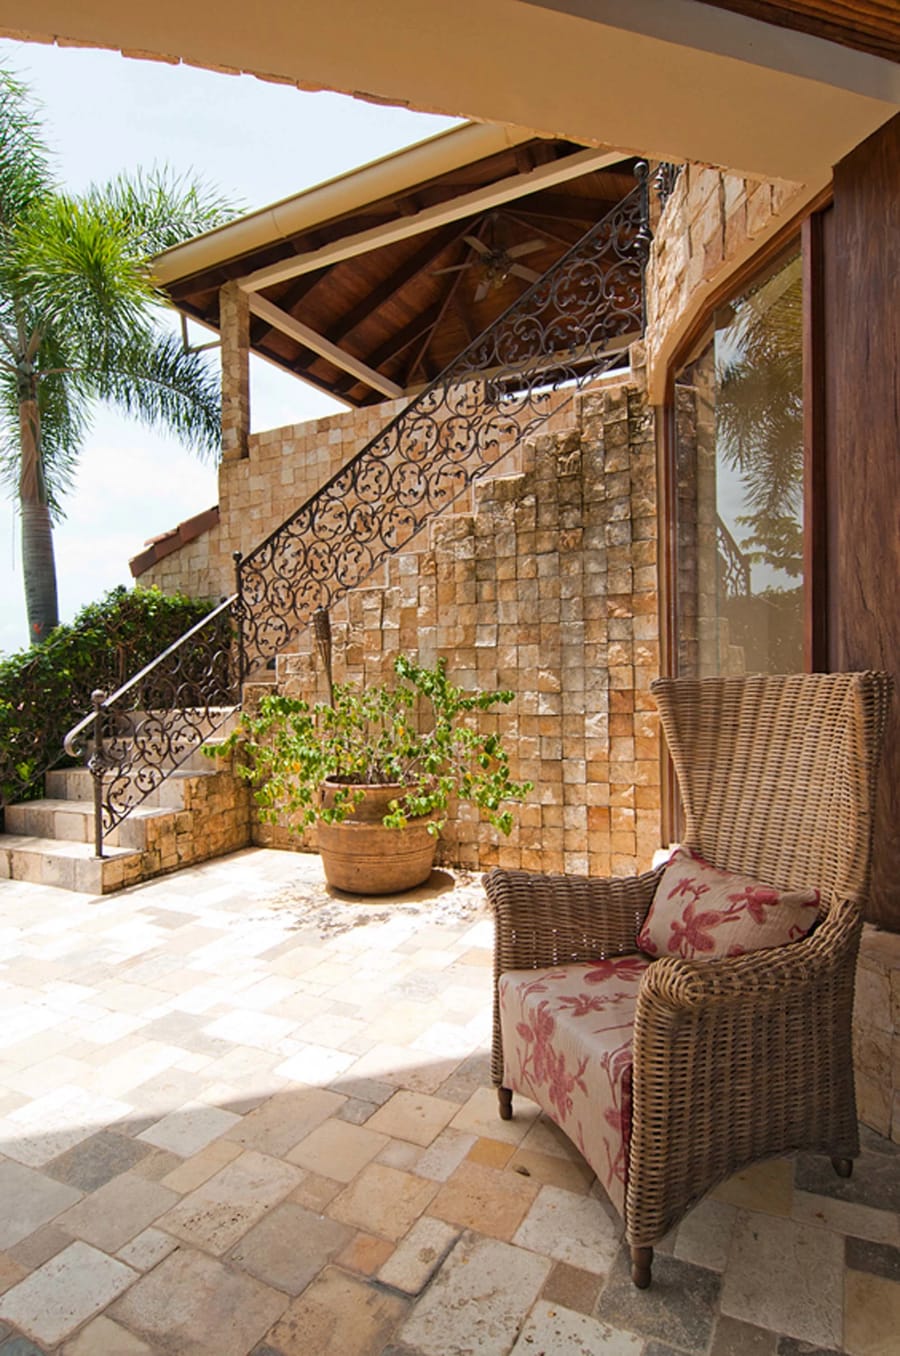 Villa Tesoro | Playas del Coco, Guanacaste, Costa Rica | Luxury Real Estate